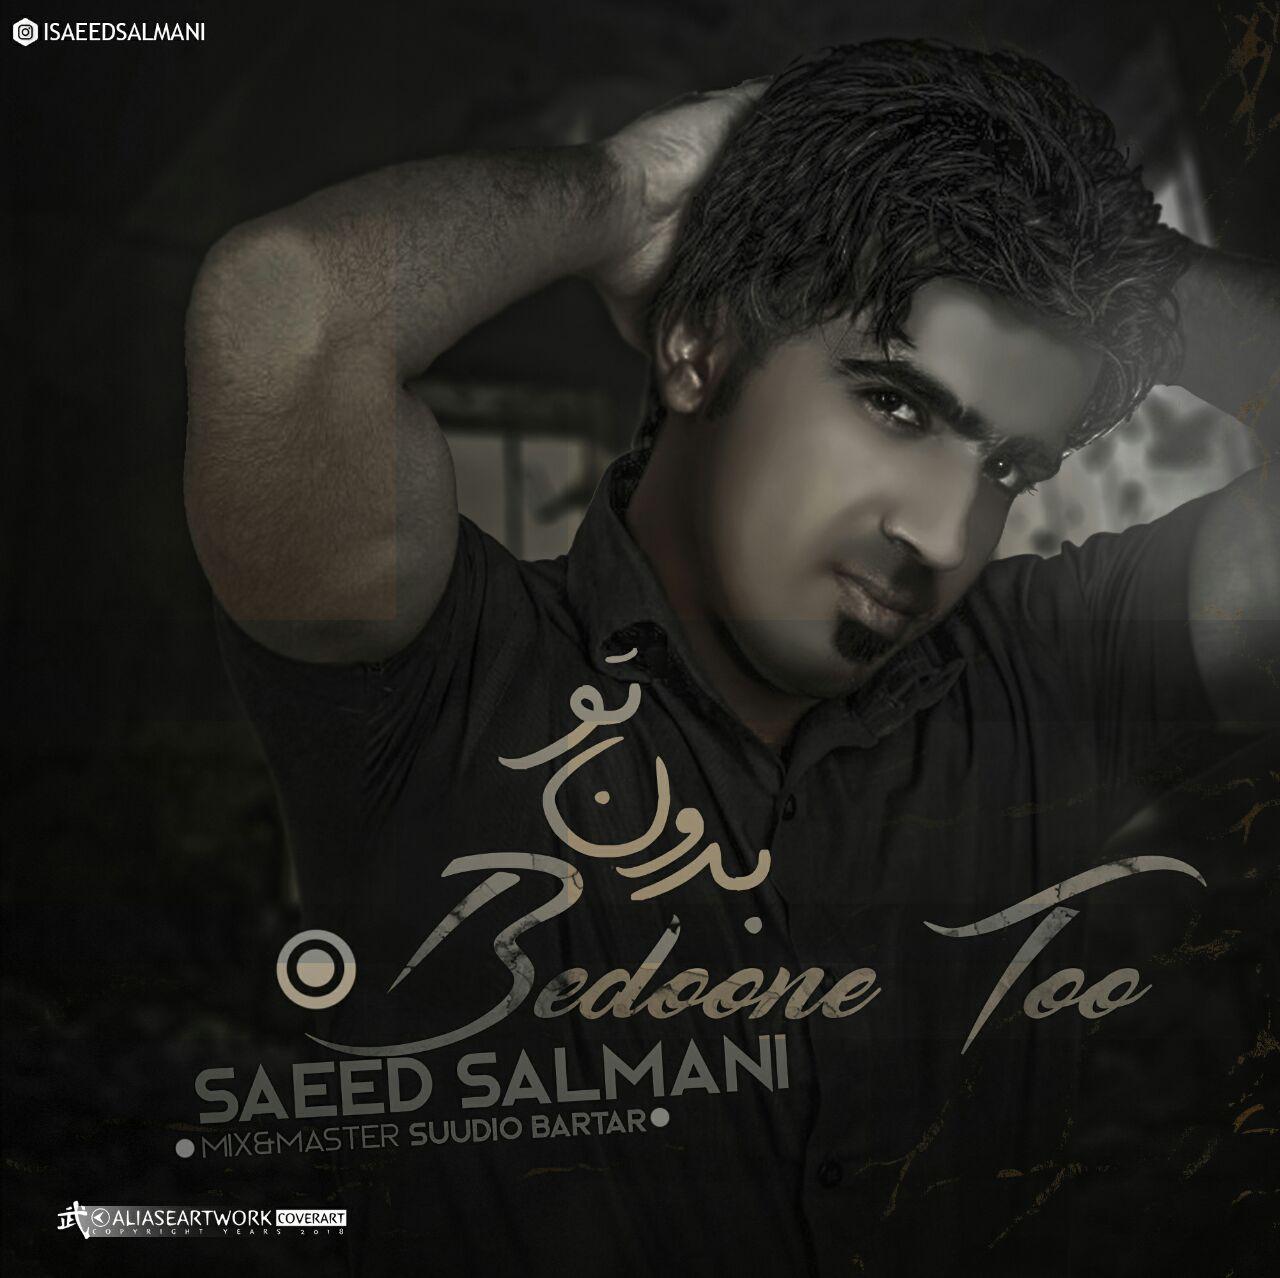 Saeed Salmani – Bedone To